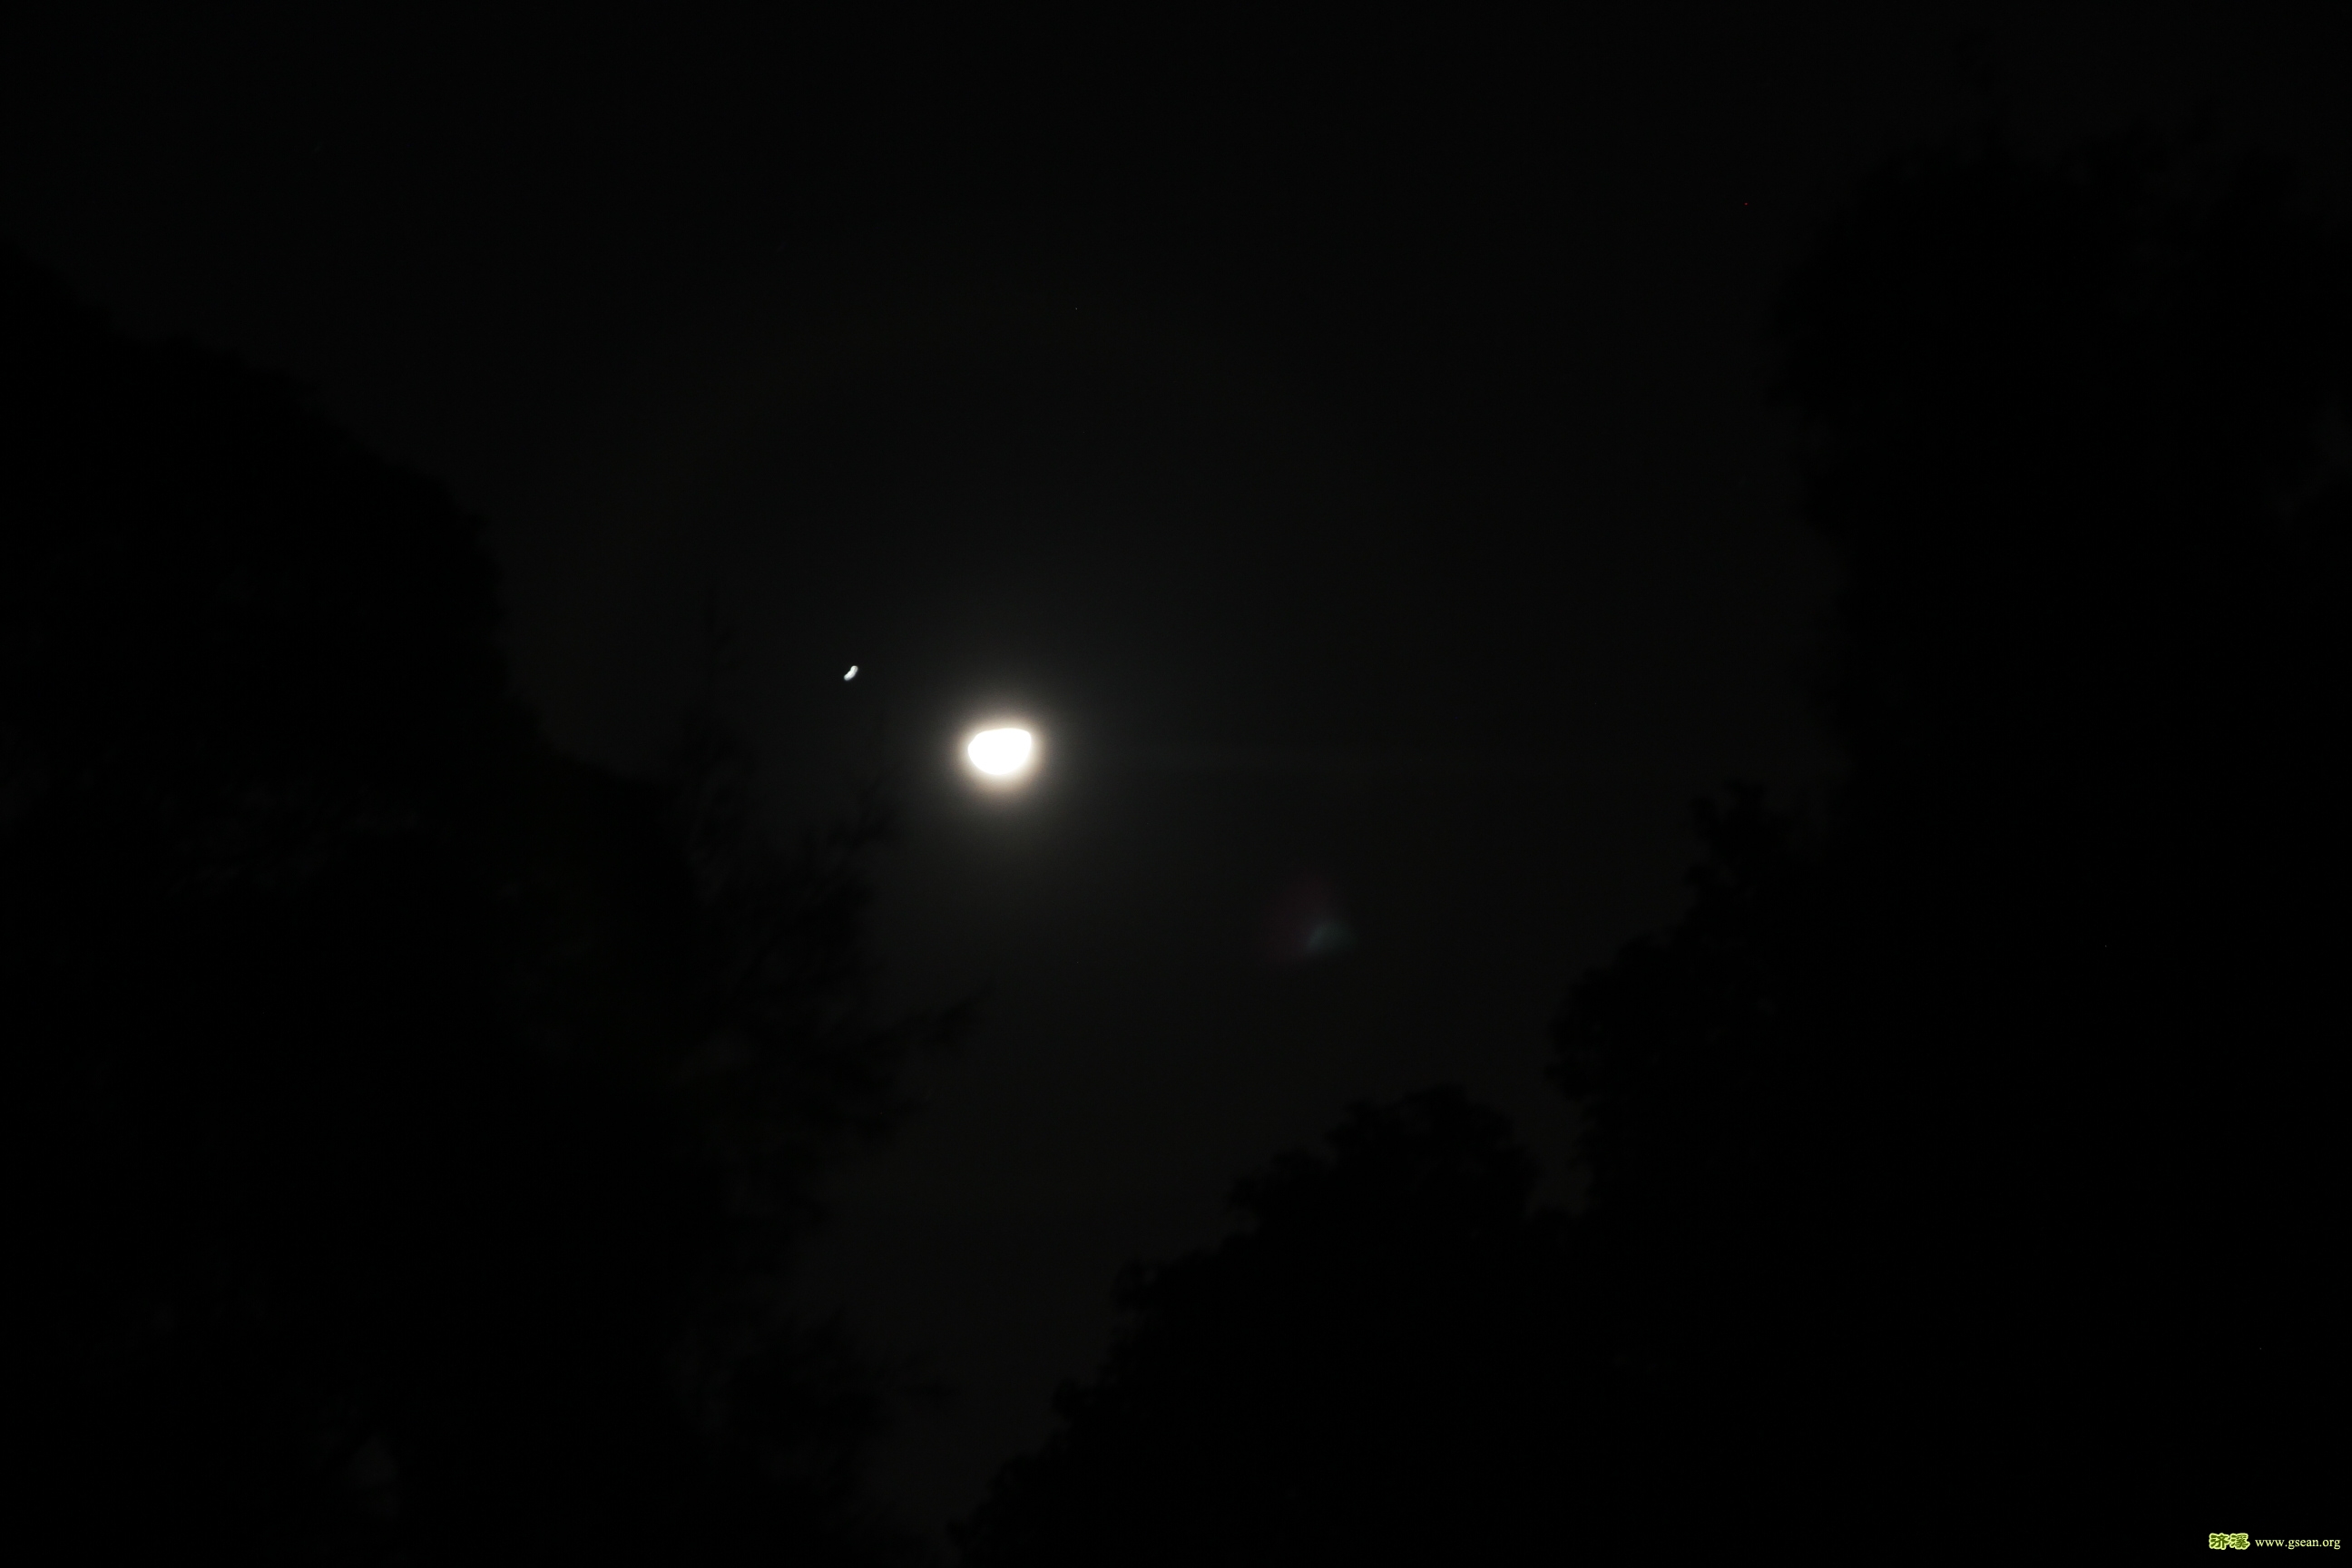 当天夜里的半月，通过望远镜看到环形山的影子，就像玻璃碗盛满了拉面，左上角还有一颗星星。老板，加点汤~